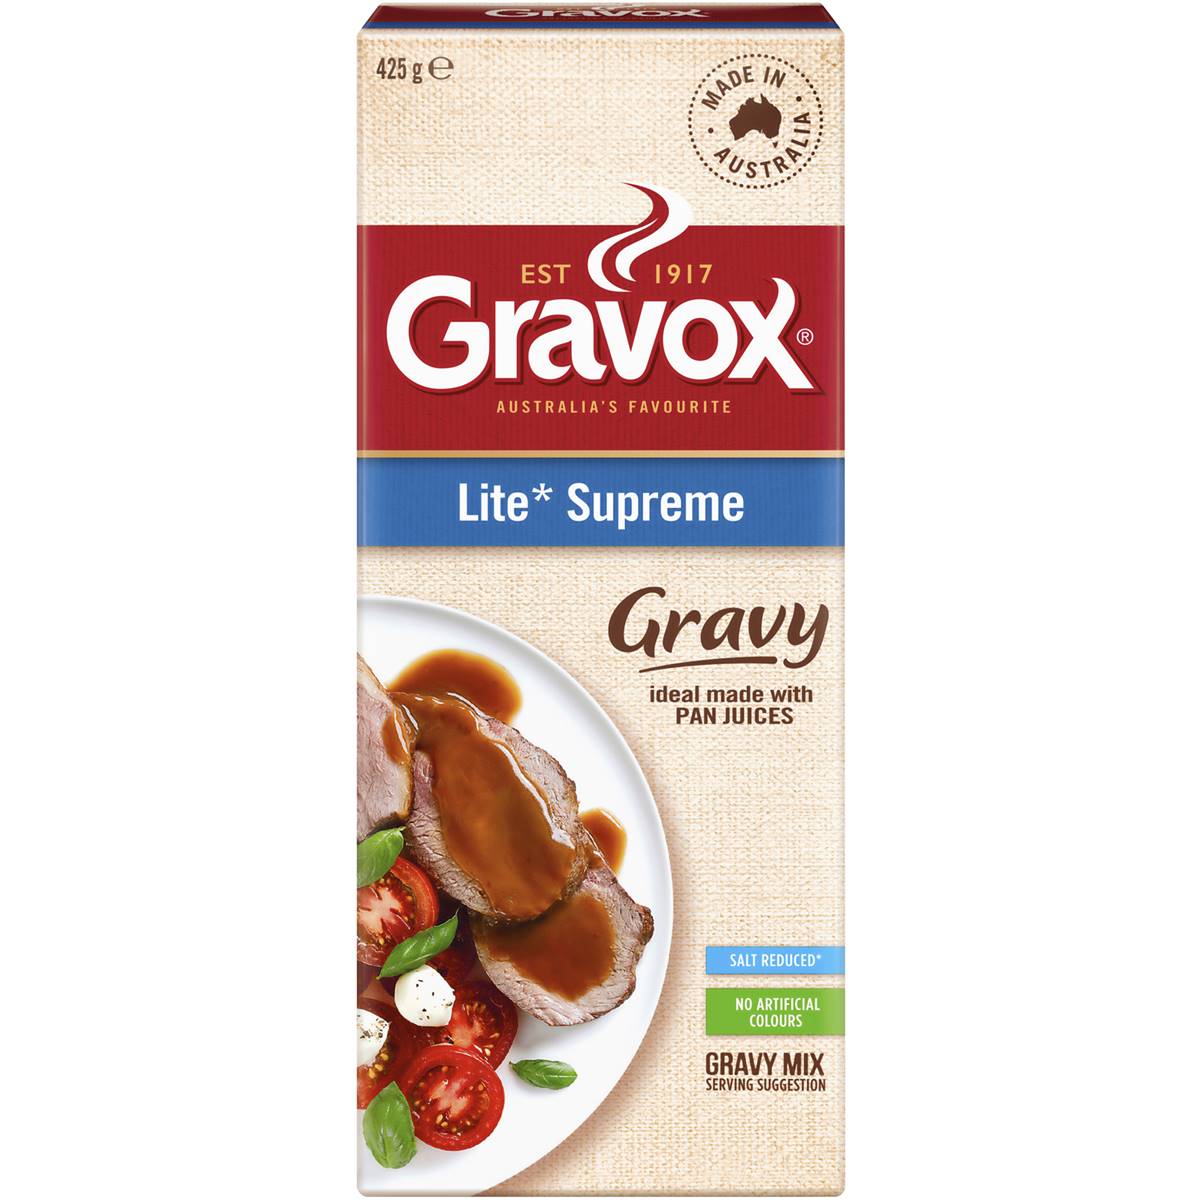 Gravox Gravy Mix Lite Supreme